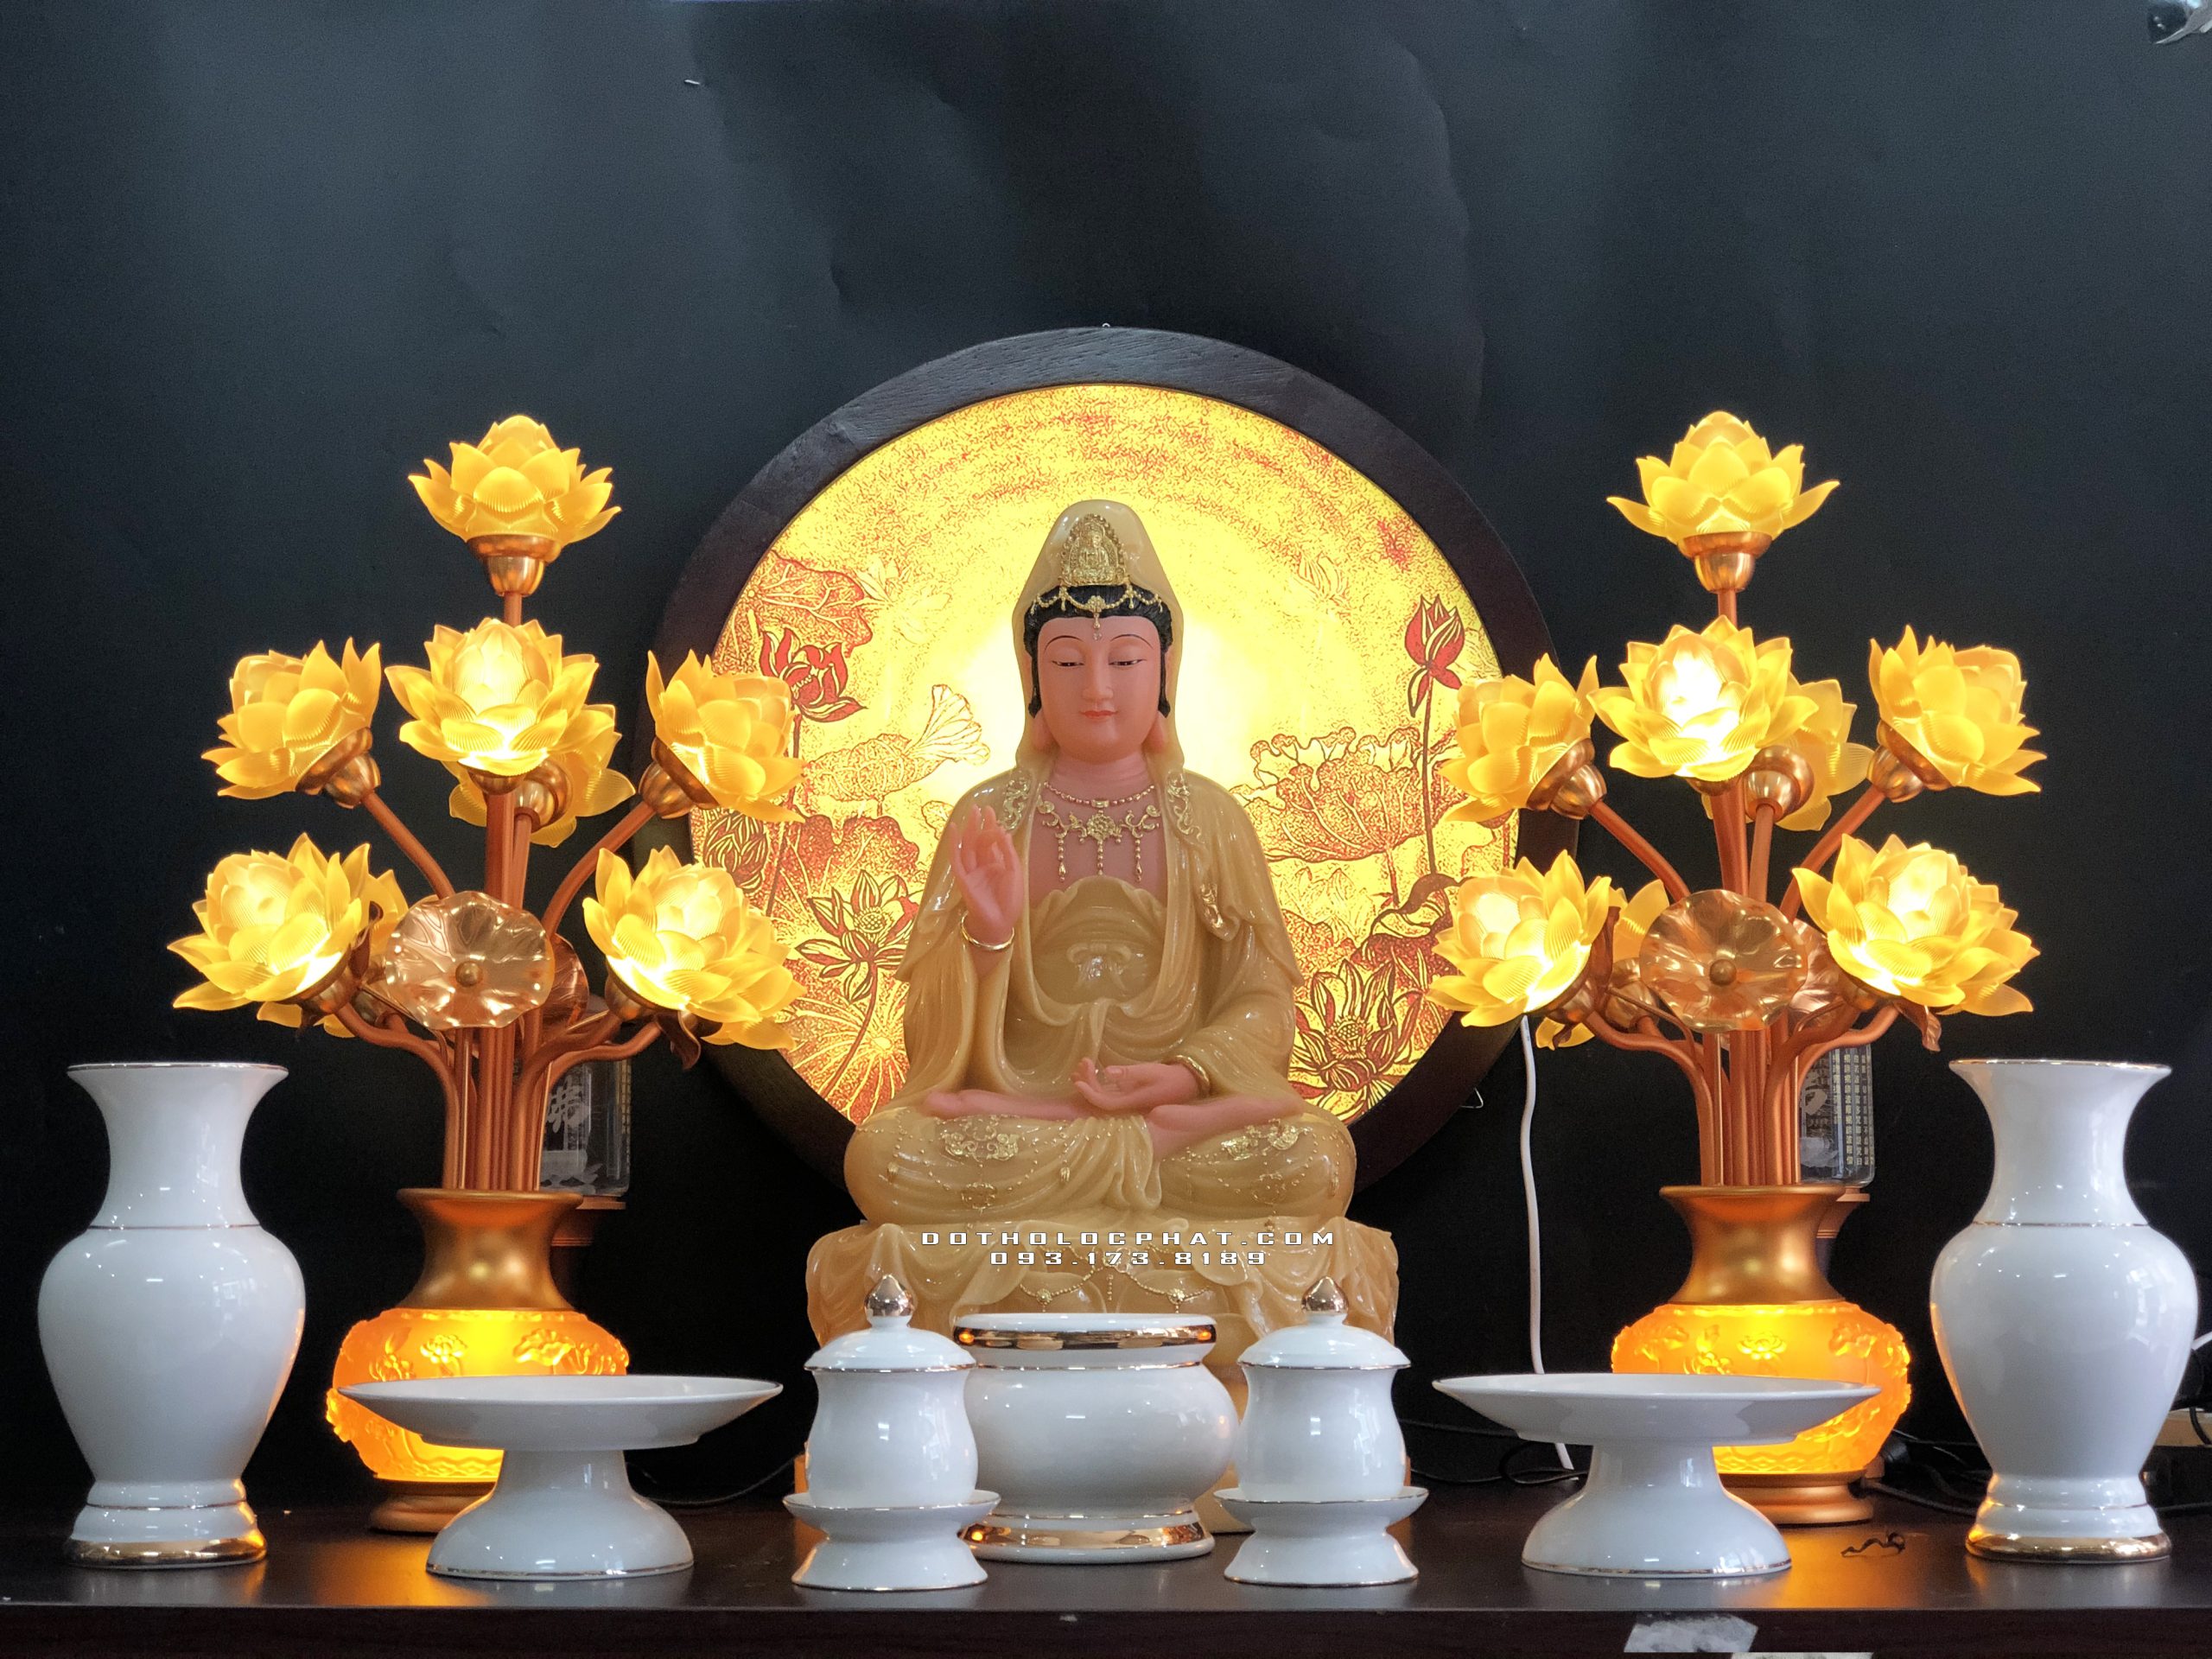 Việc lập bàn thờ Phật Quan Âm tại nhà không chỉ giúp tâm linh gia đình thêm yên bình mà còn truyền tải giá trị văn hóa Phật giáo. Cách lập bàn thờ đúng phong thủy và tinh tế sẽ giúp bạn hướng tâm mong ước đến tình yêu, đạo đức và cả sự hoàn thiện bản thân.